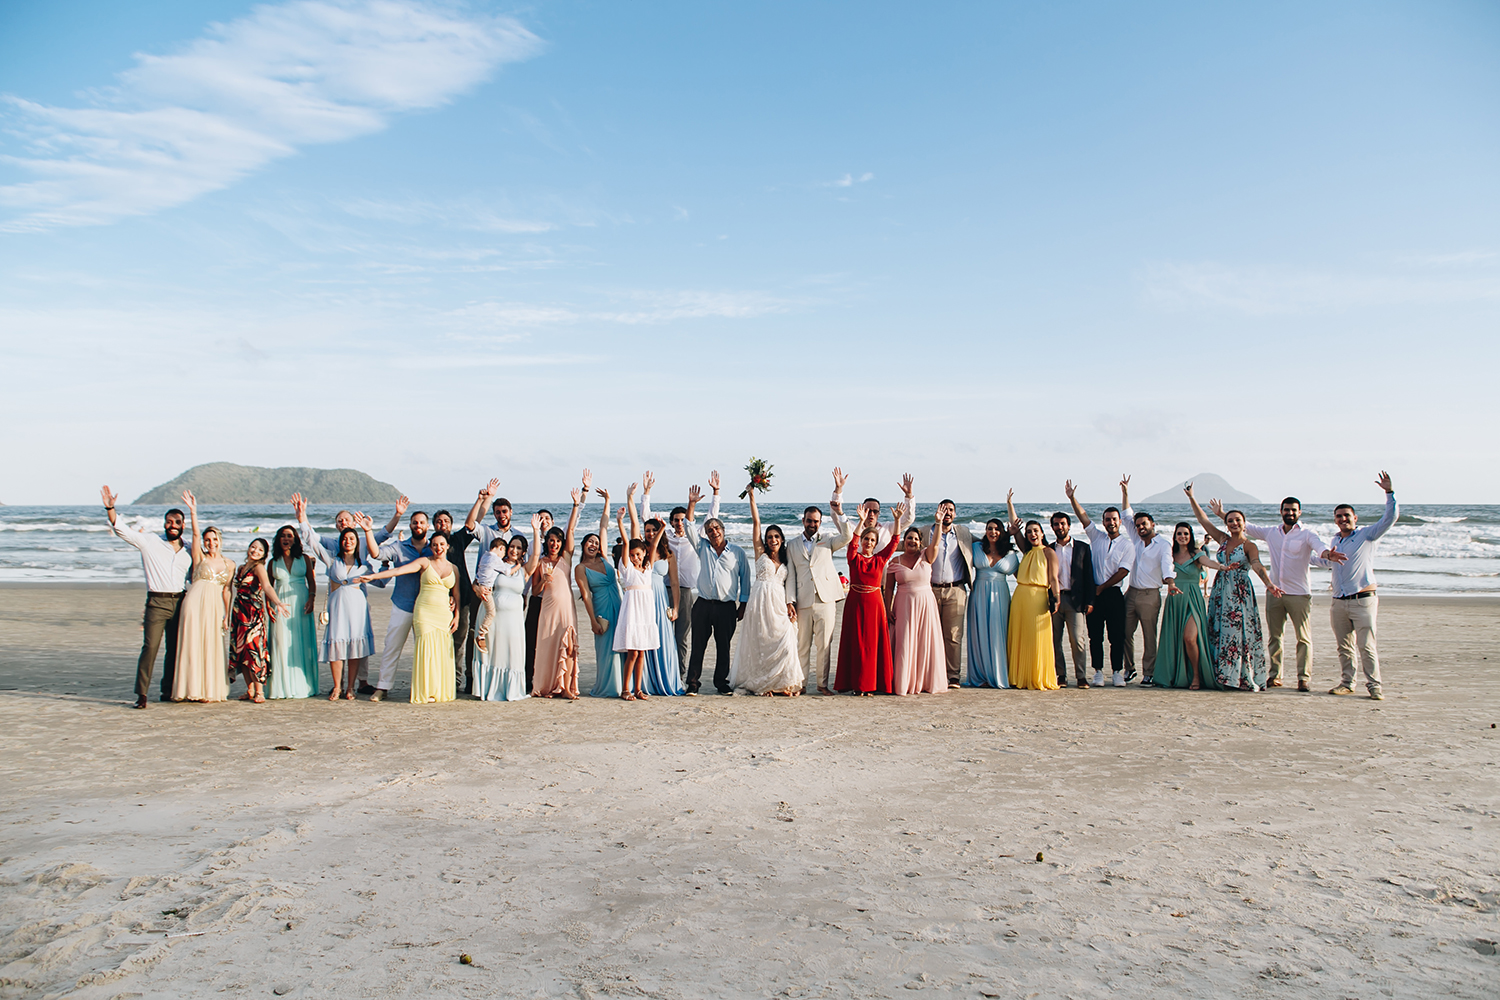 Sa e Affonso | Casamento descontraído na praia, por Sereiamor